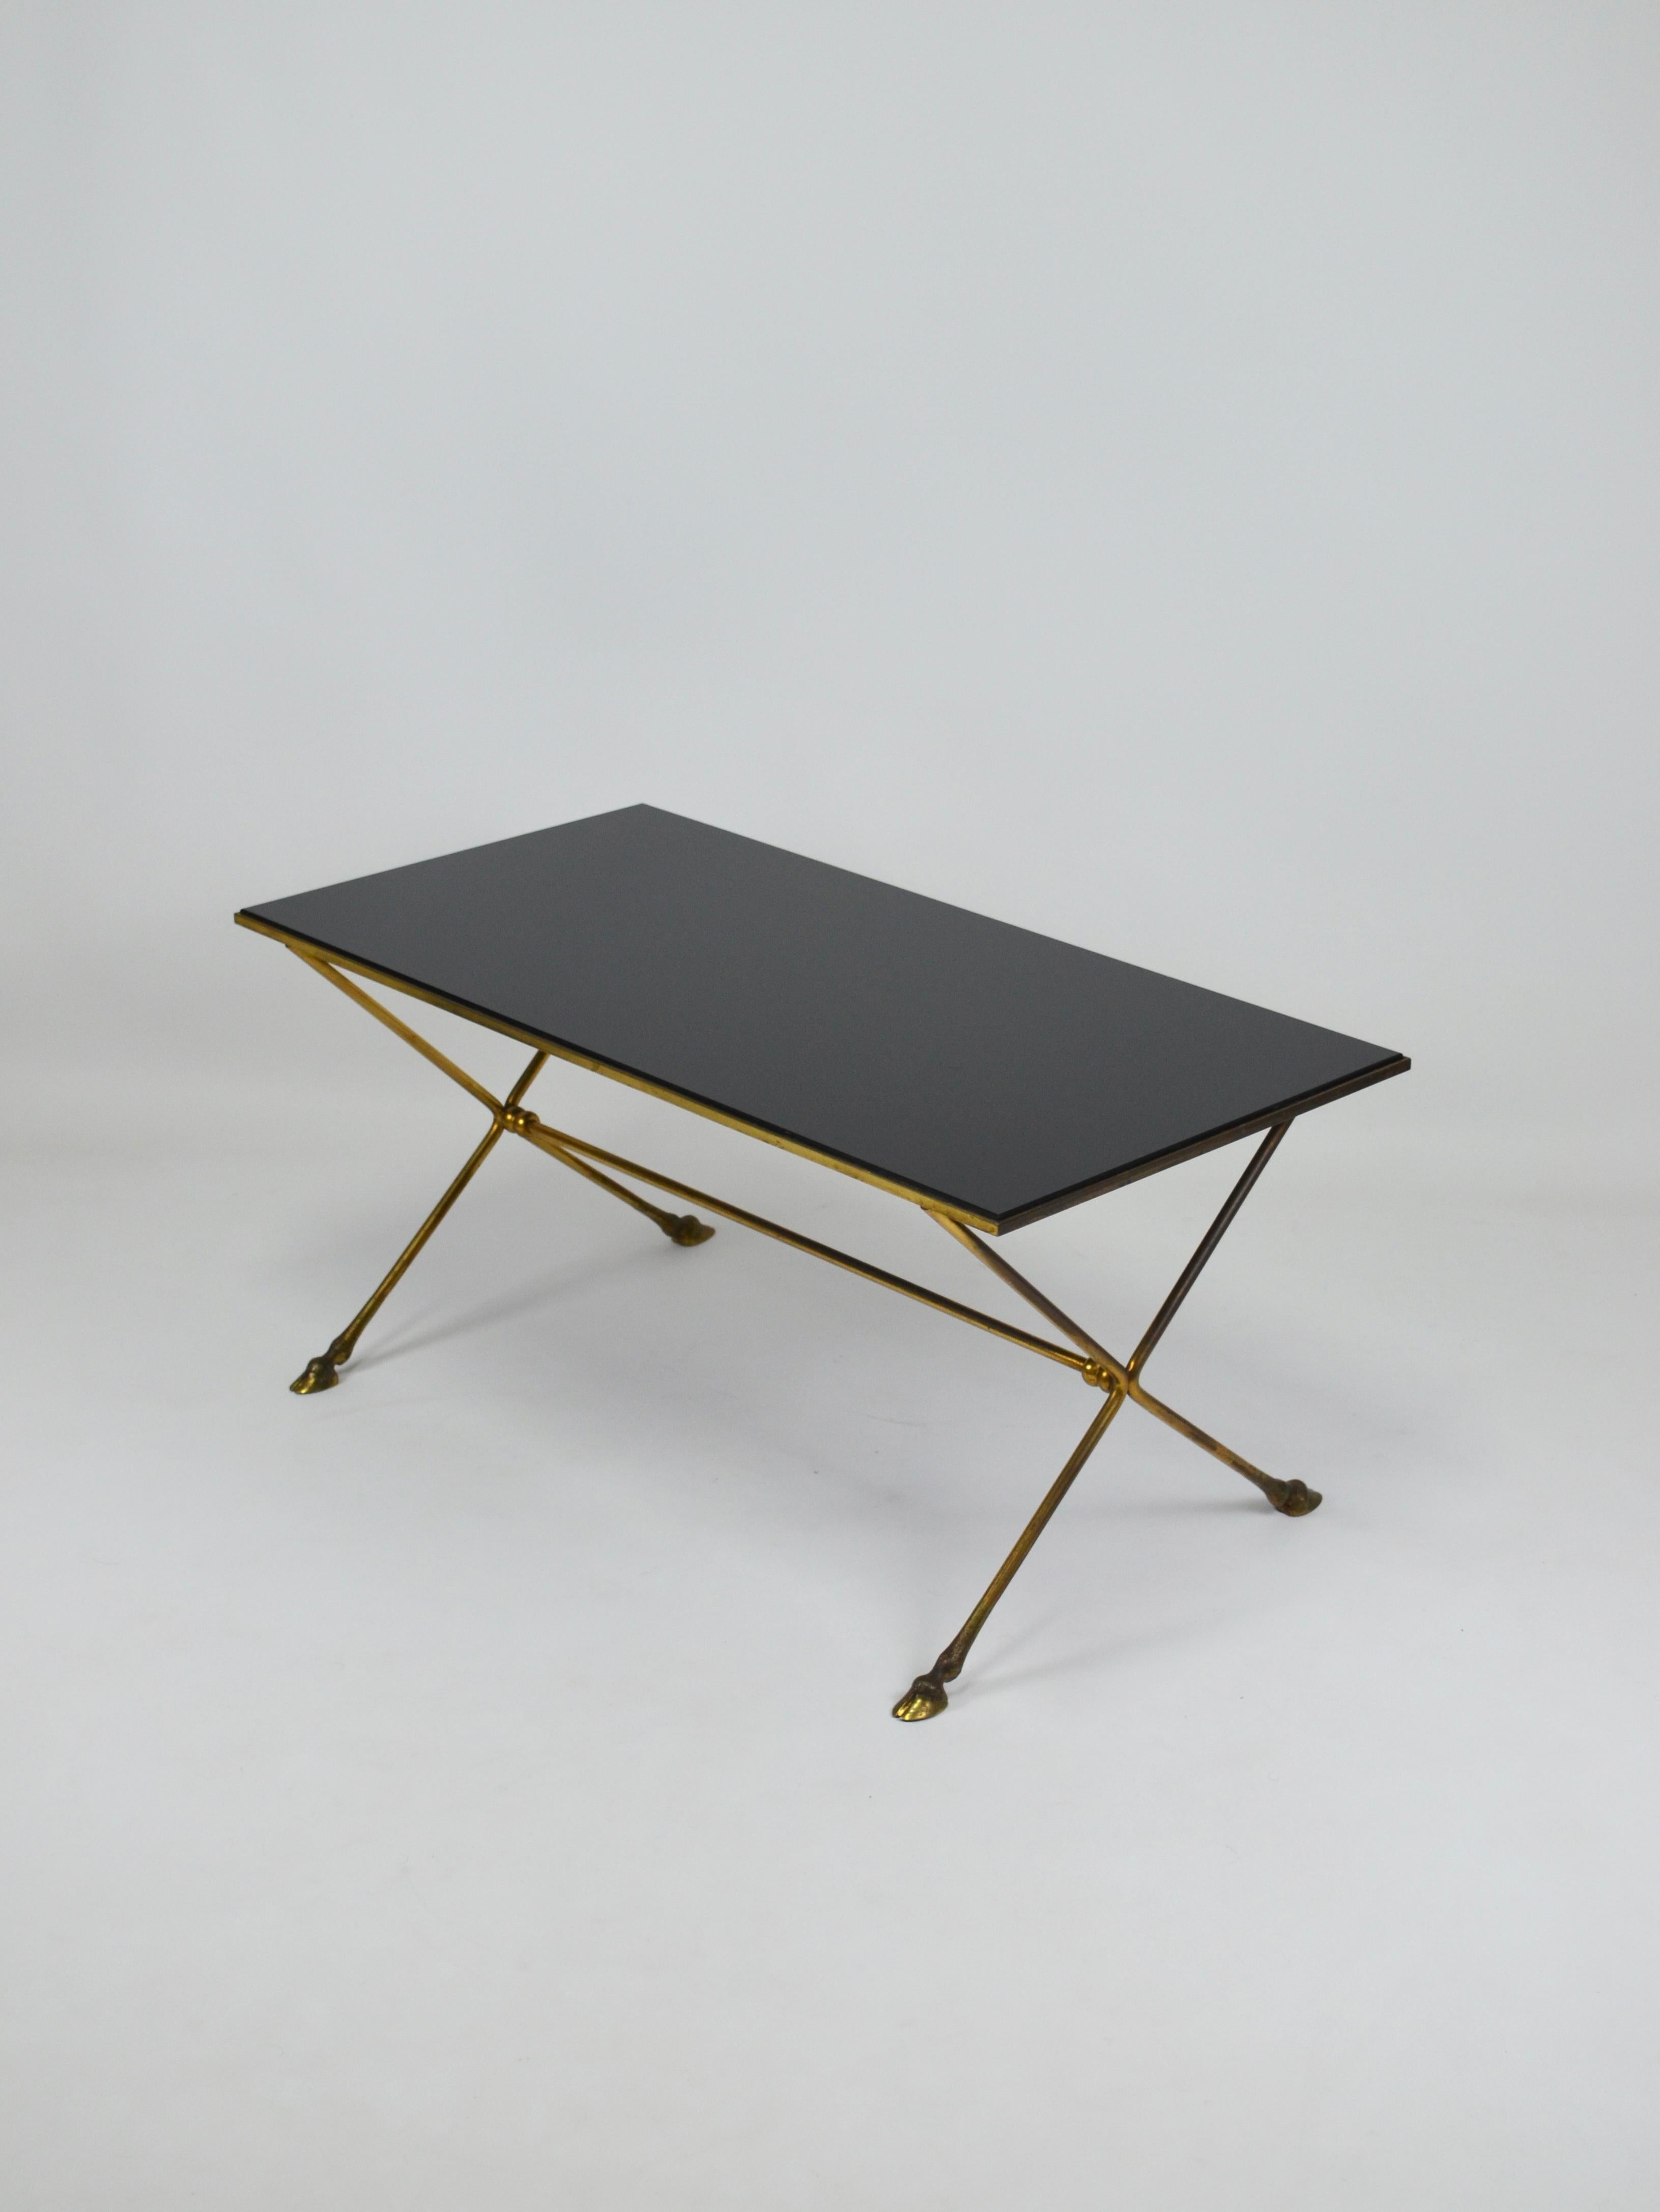 Elégante table néo-classique des années 60 en laiton doré attribuée à la Maison JANSEN avec des pieds en forme de sabot et un plateau biseauté en verre.
Base avec pieds ronds en forme de X avec entretoise intermédiaire.